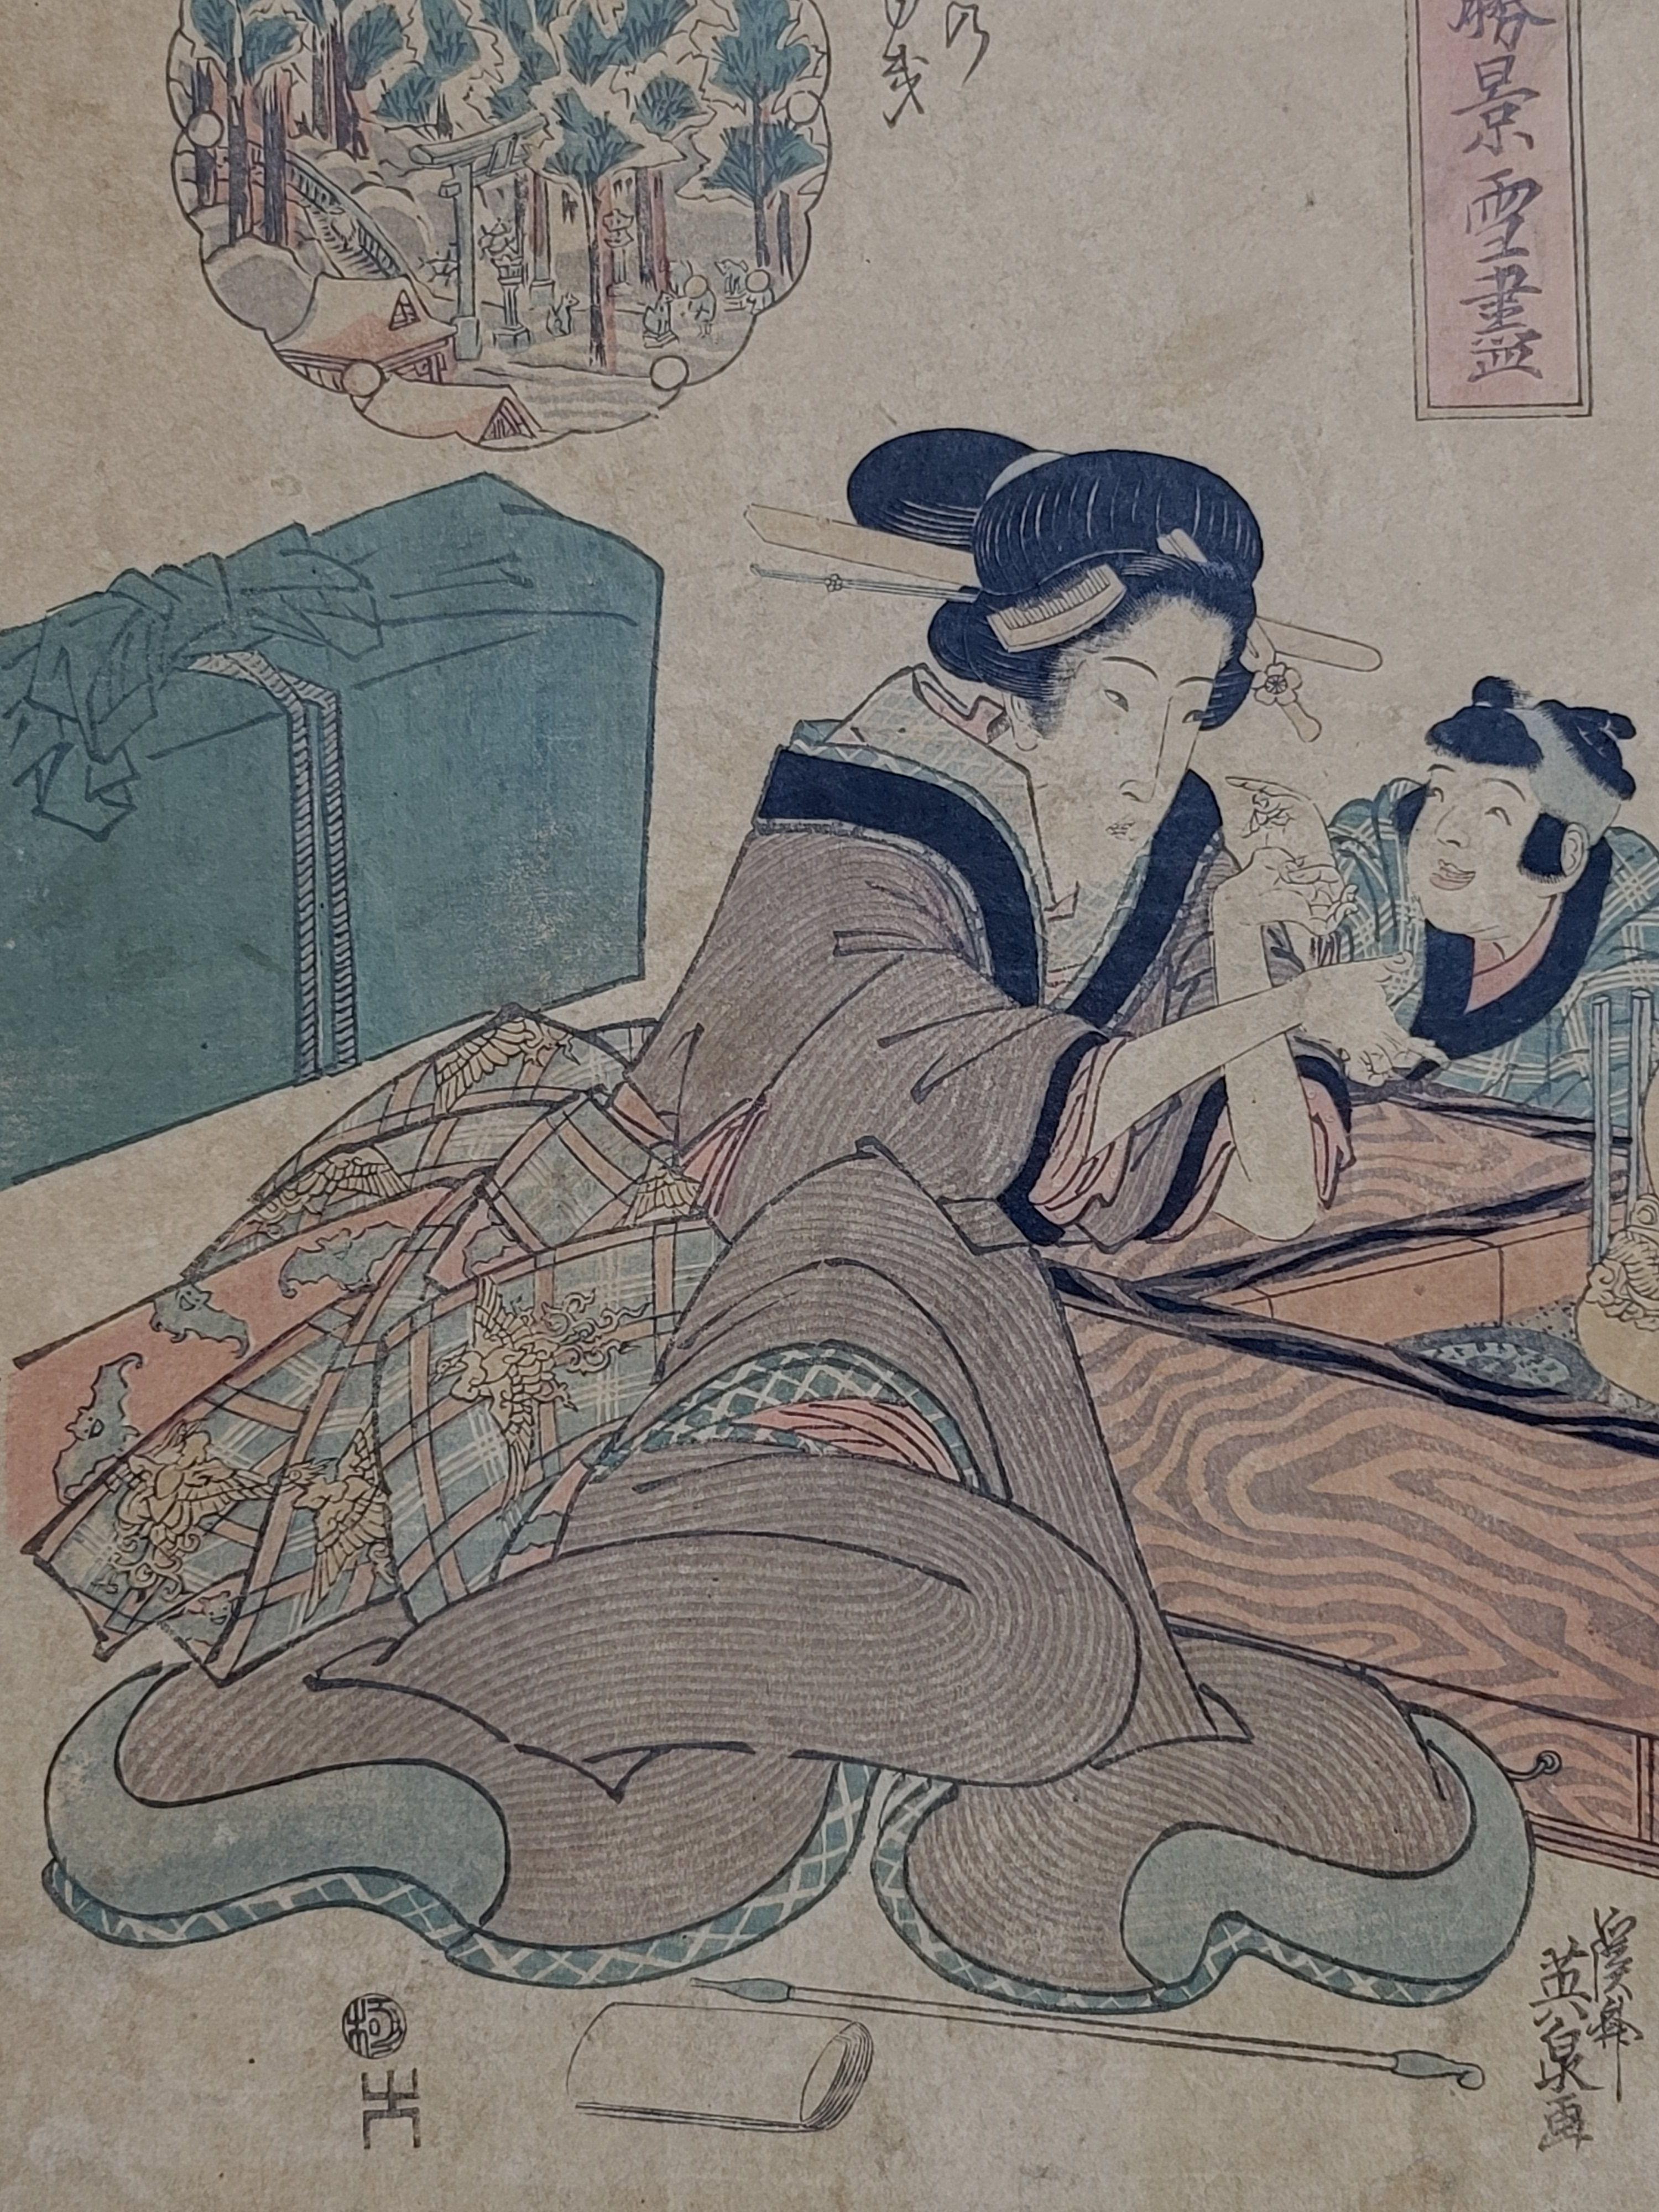 Gravure sur bois japonaise par Keisai Eisen ? ? ? ? (1790~1848), original et non encadré.

À PROPOS DE L'ARTISTE

Keisai Artistics ( ?? ? ?, 1790-1848) était un artiste japonais d'ukiyo-e spécialisé dans les bijin-ga (images de belles femmes).